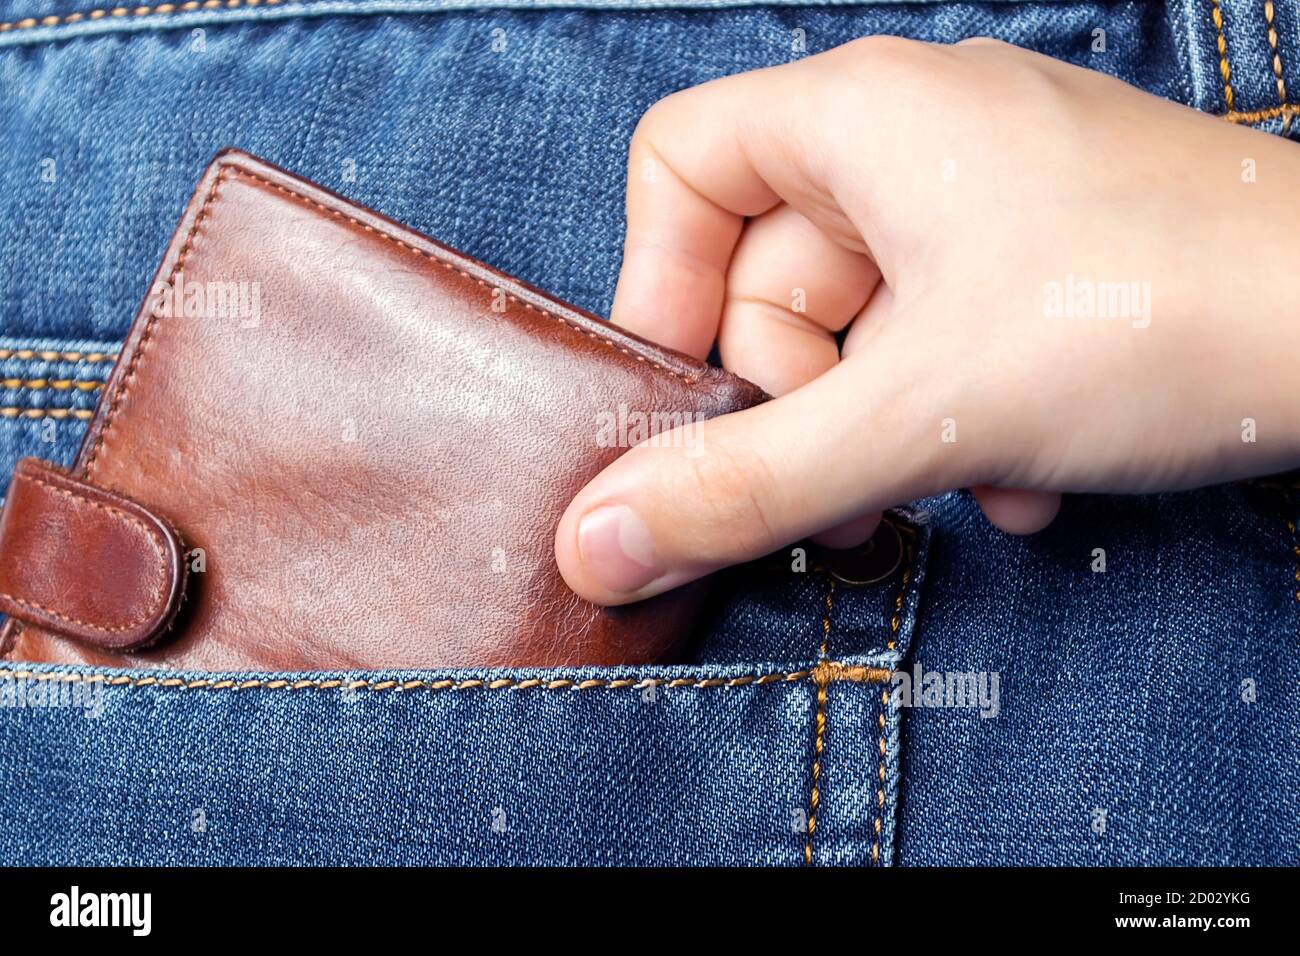 Une main tire un portefeuille hors de la poche arrière de son Jean.le concept de pickpocketing ou de vol dans la famille de parents. Banque D'Images